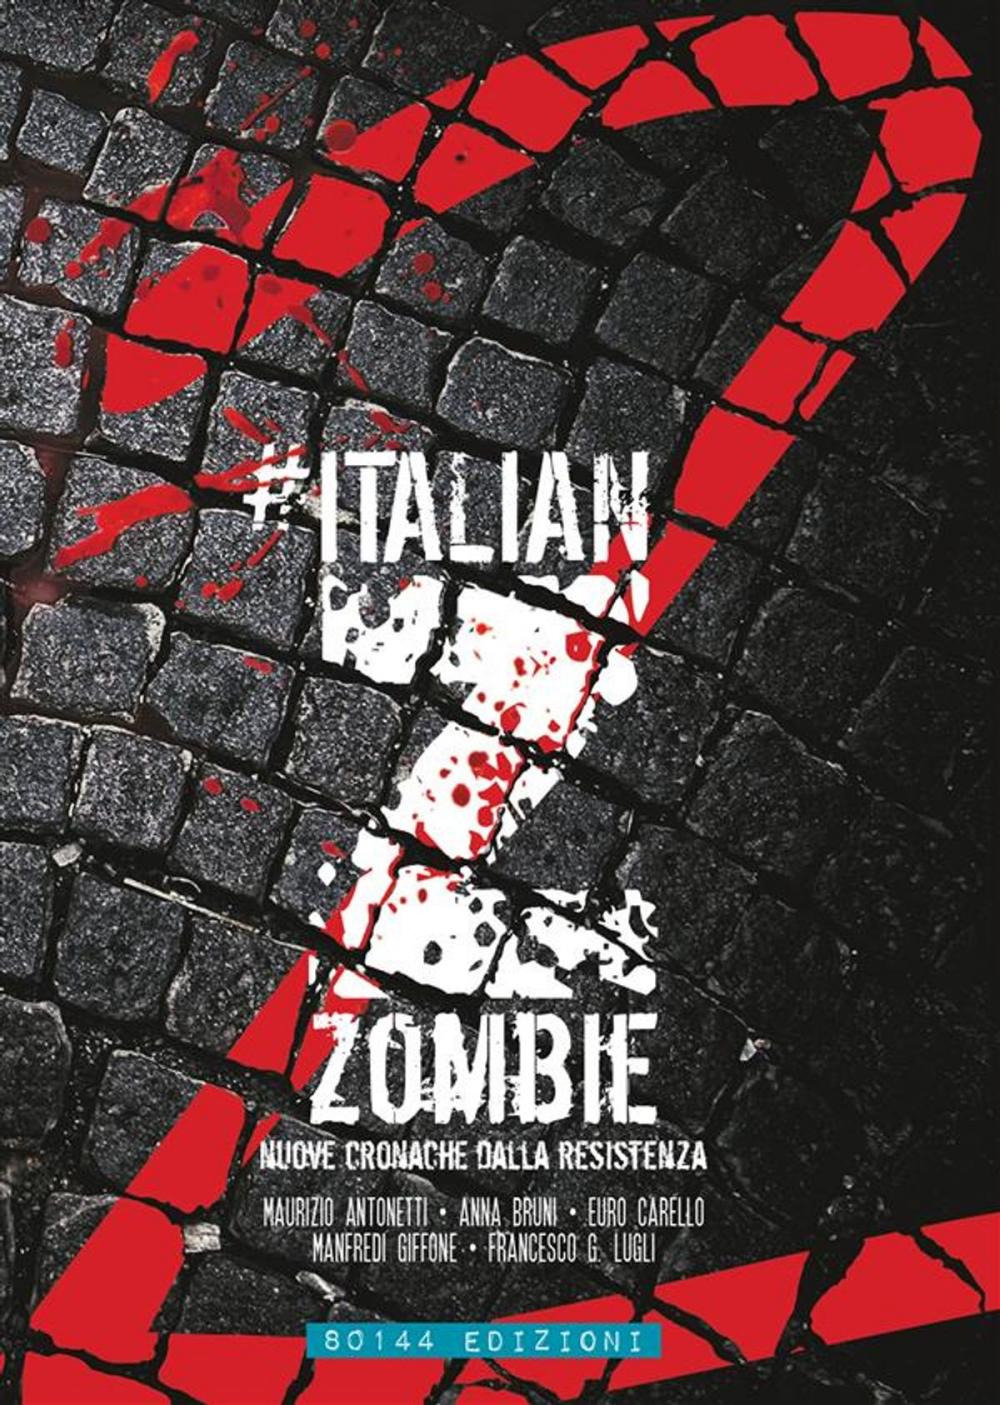 Big bigCover of Italian Zombie 2